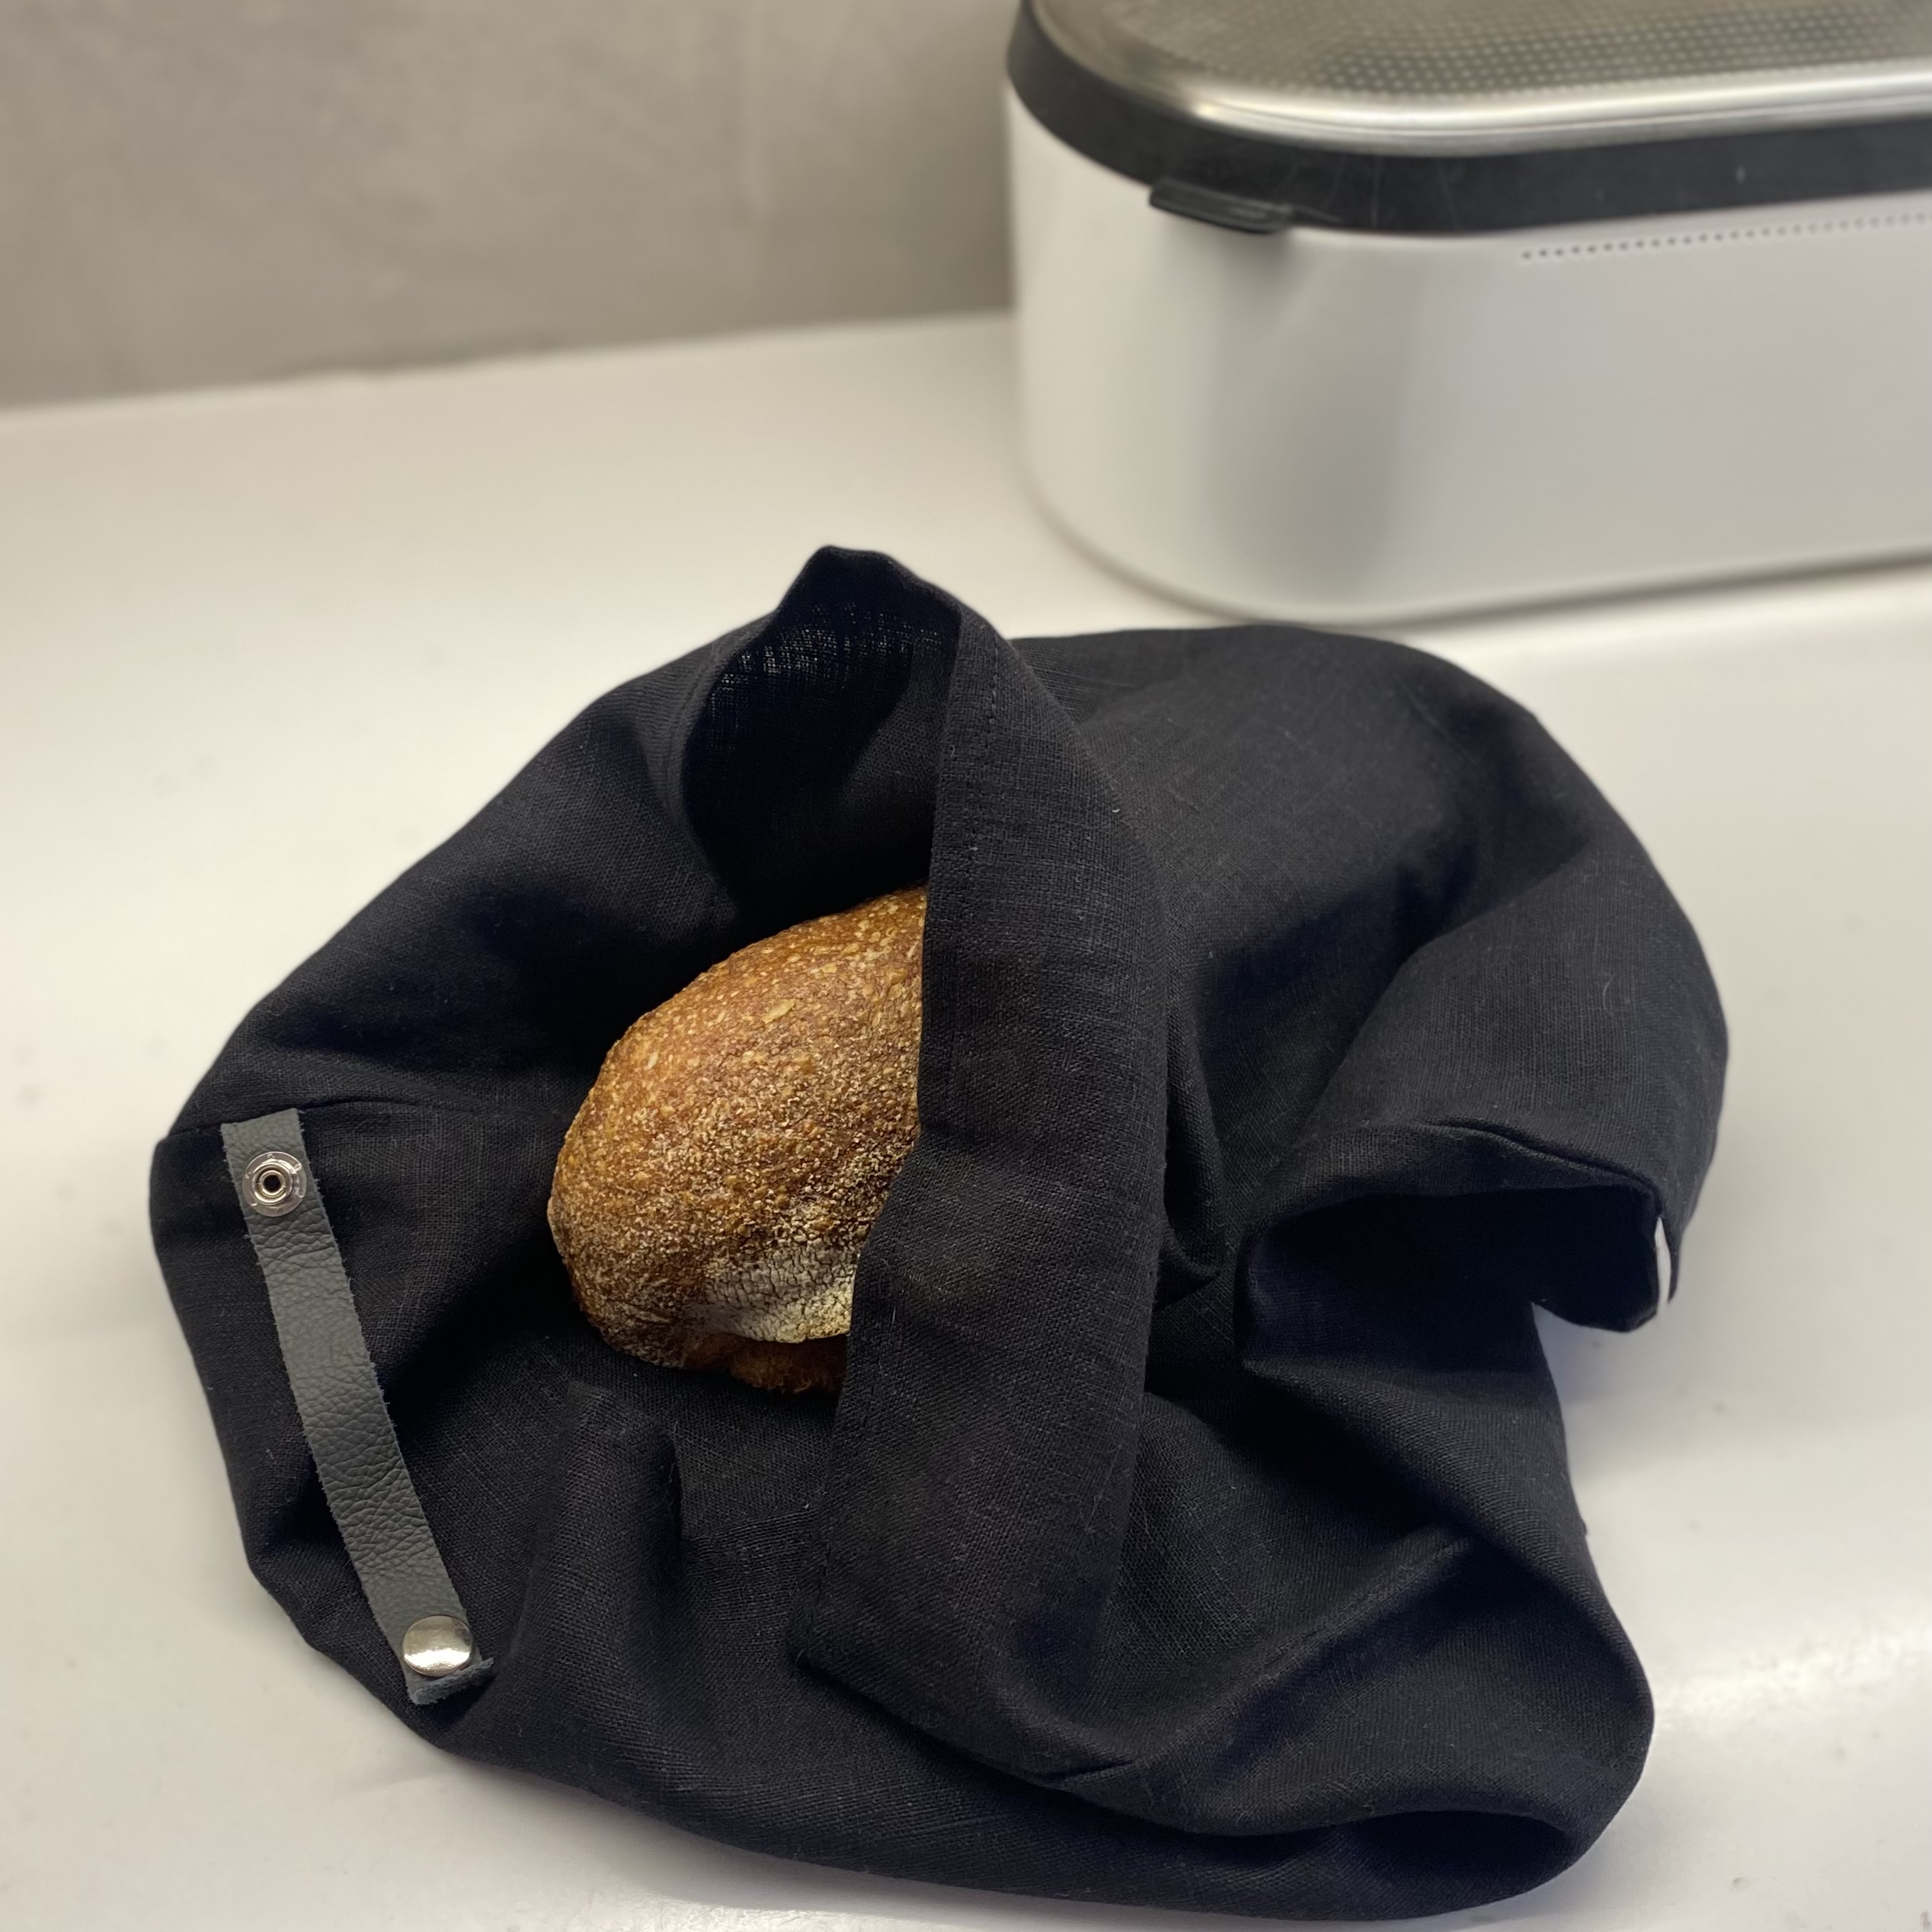 Lněný vak na chleba / sáček na pečivo s koženým poutkem - Černá (Black) Rozměr mix: 45x55 cm